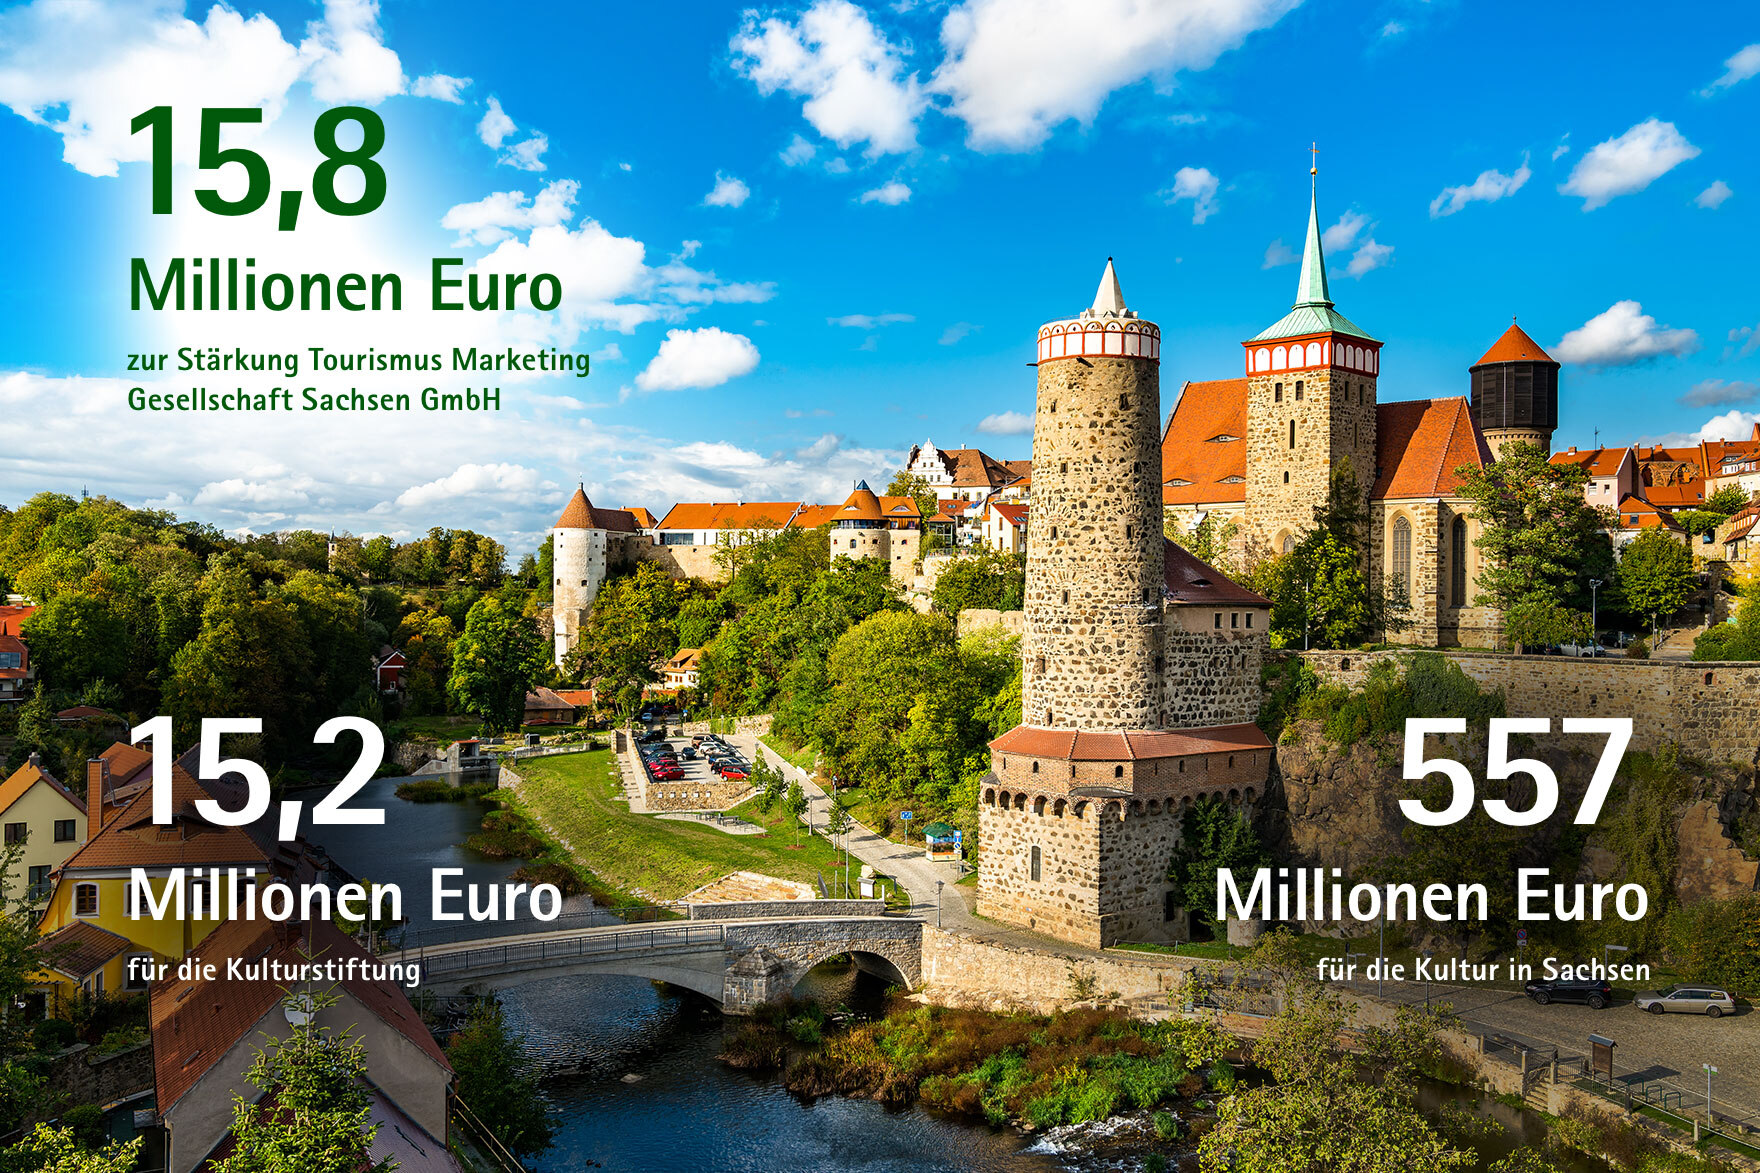 15,8 Millionen Euro zur Stärkung der Tourismus und Marketinggesellschaft, 15,2 Millionen Euro für die Kulturstiftung, 557 Millionen Euro für die Kultur in Sachsen